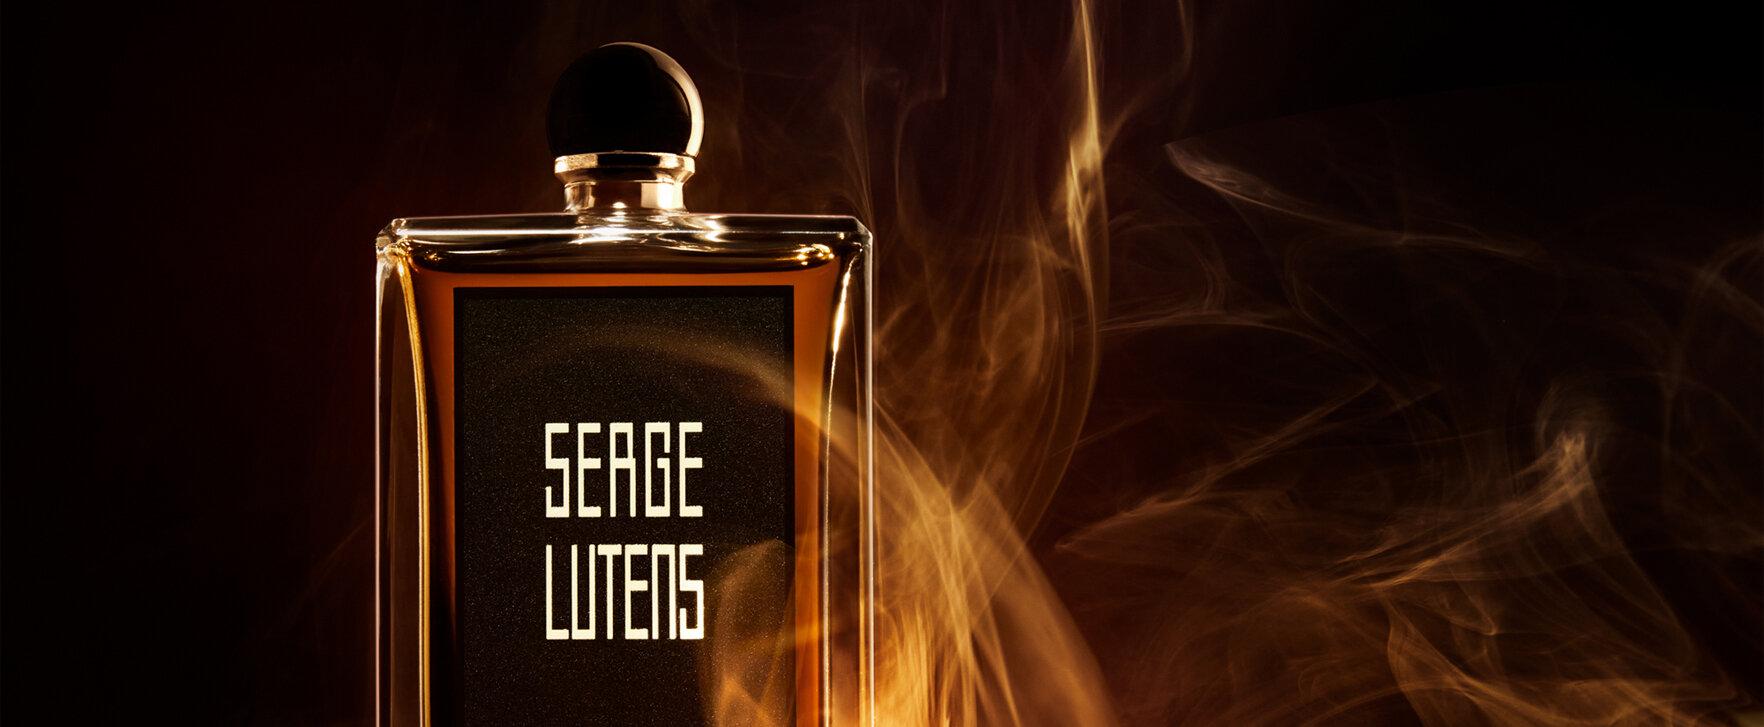 Serge Lutens' neuer Unisexduft: Eine Ode an den Luxus und Exzess des Lebens